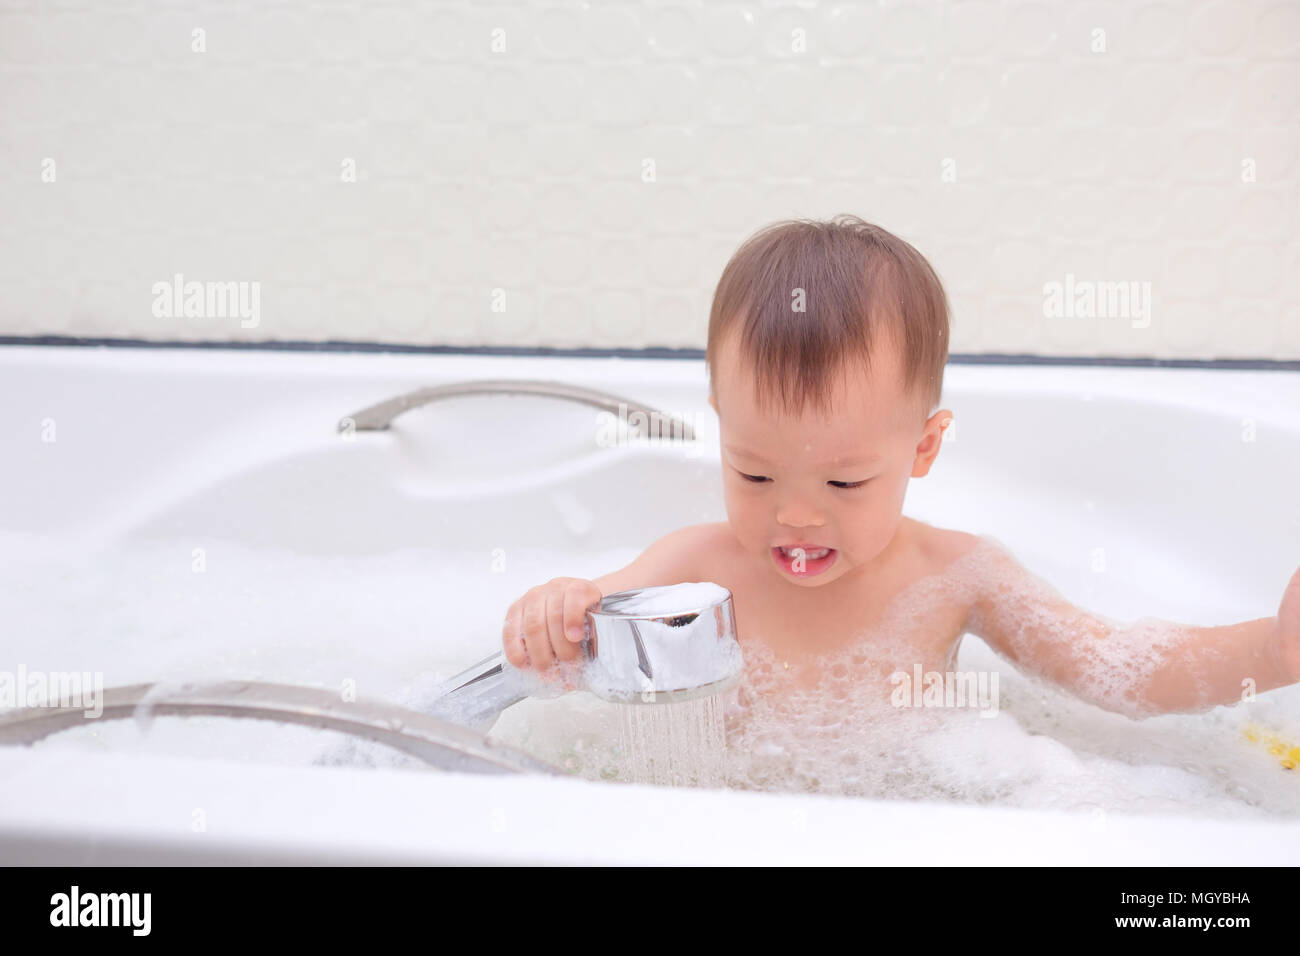 Süße kleine Asiatische 18 Monate / 1 Jahr altes Kleinkind Baby Junge Kind  Spaß sitzen in der Badewanne, eine Dusche, in der Hand eine Dusche nehmen,  indem er sich i Stockfotografie - Alamy